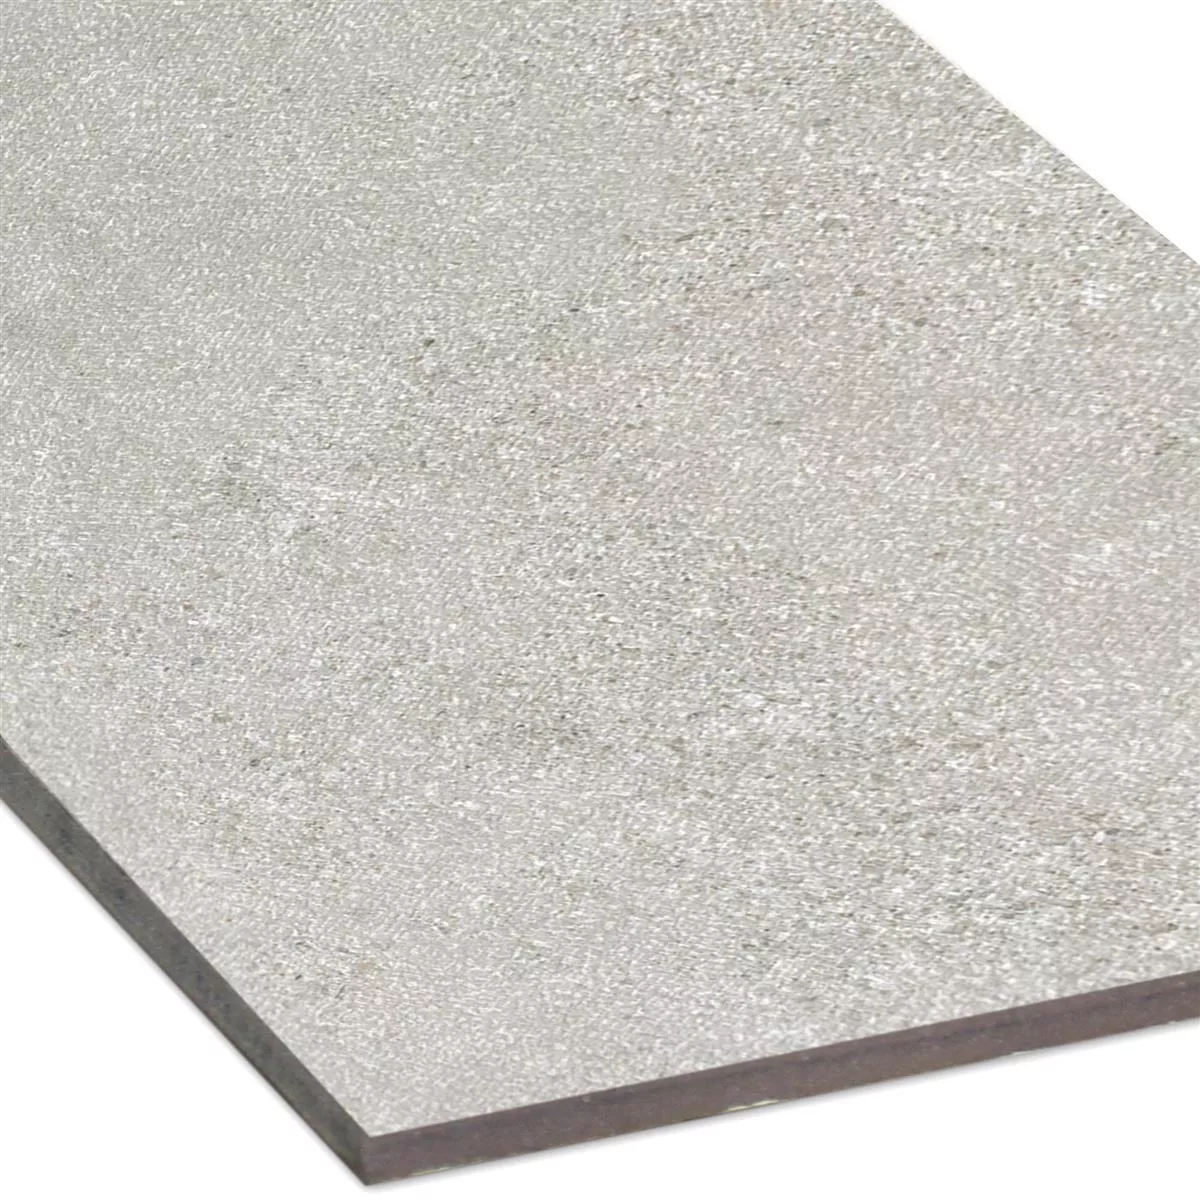 Sample Floor Tiles Galilea Unglazed R10B Grey 30x60cm